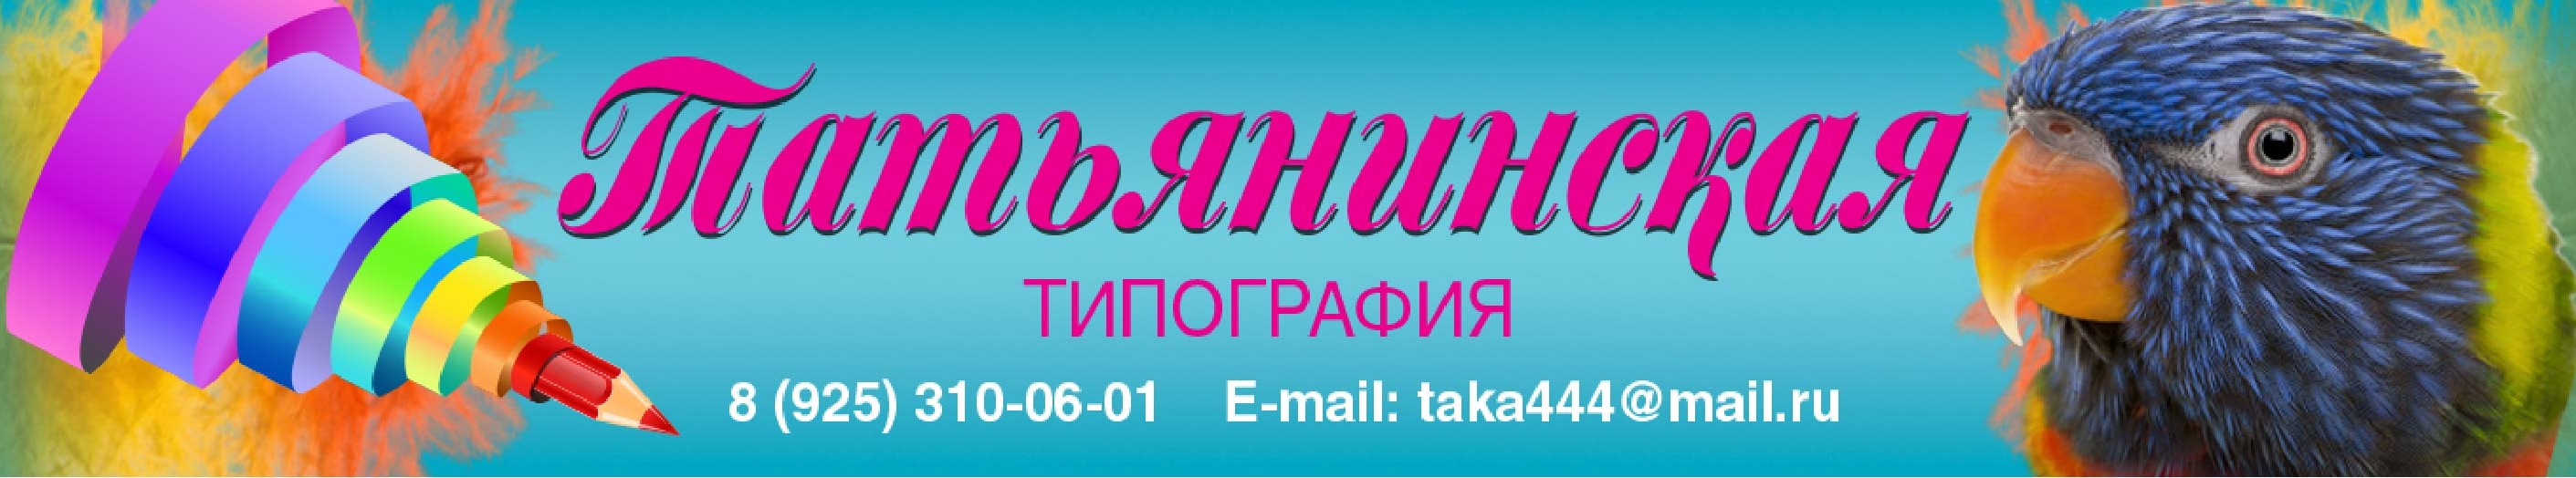 фото: "Татьянинская типография": от цифровой печати до лазерной гравировки